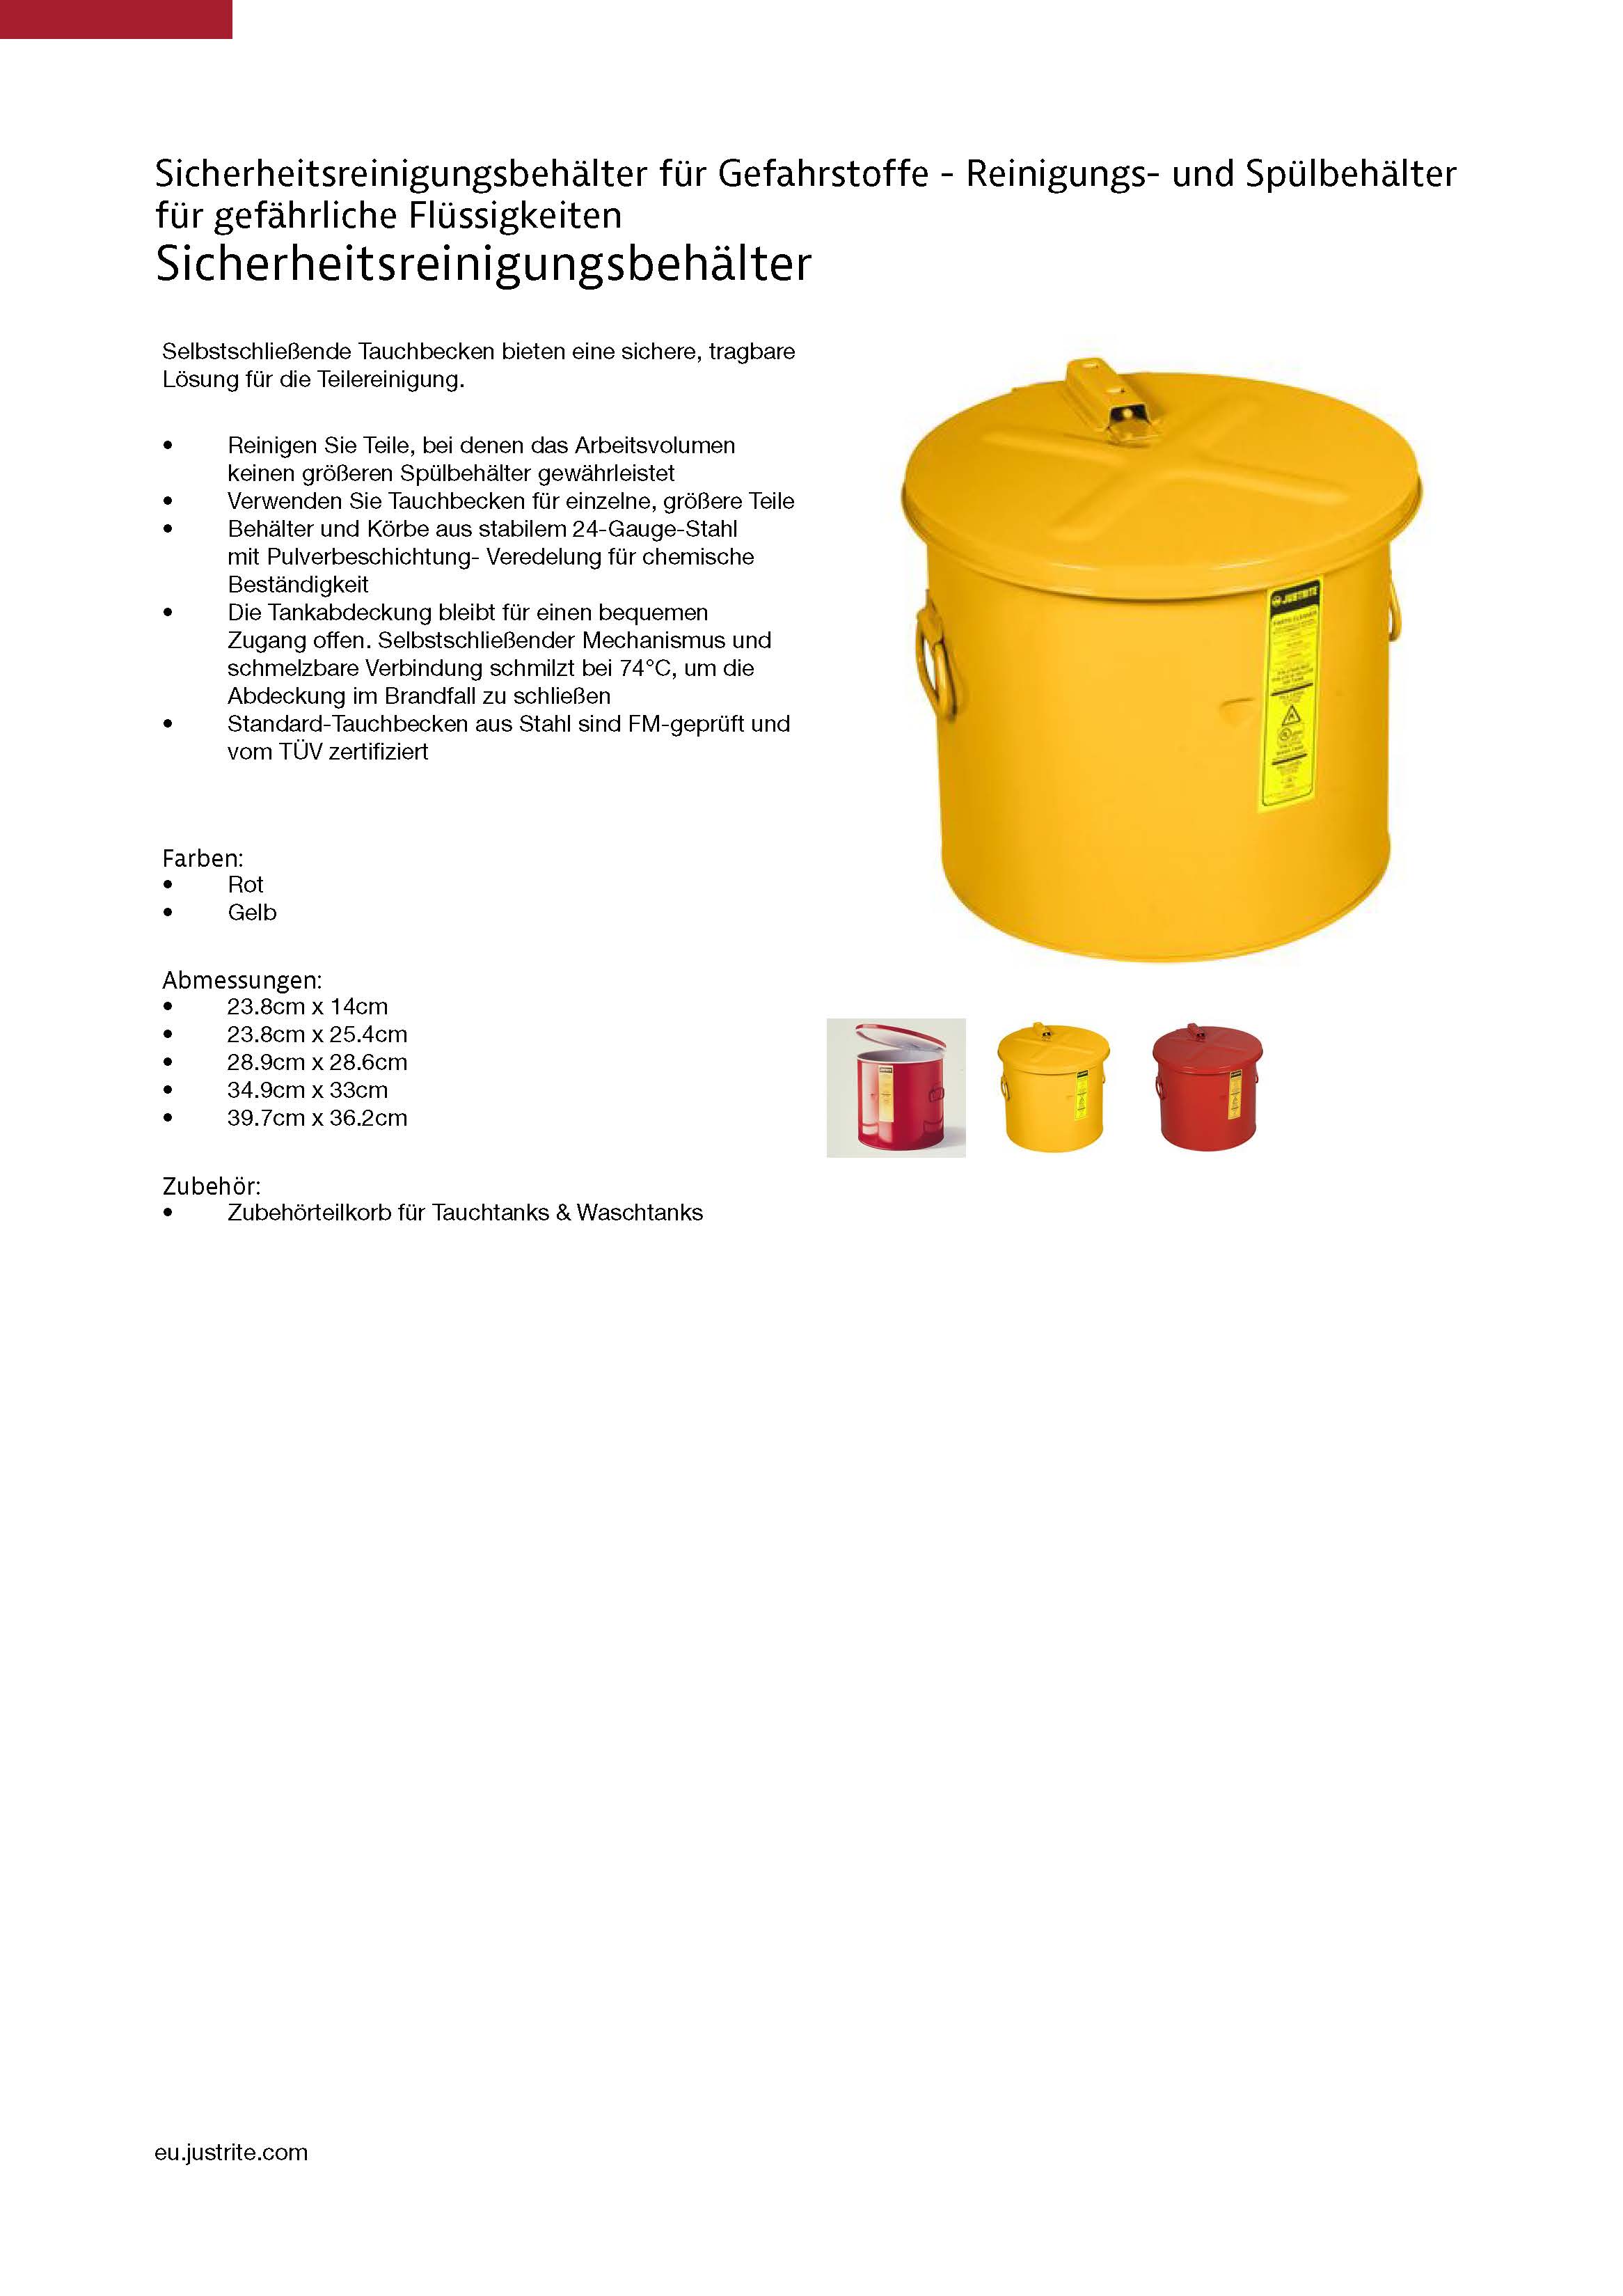 Sicherheitsreinigung Tauchtanks 19 Liter  2760 Justrite Rot 19 34.9cm x 33cm Auskleidung aus HDPE